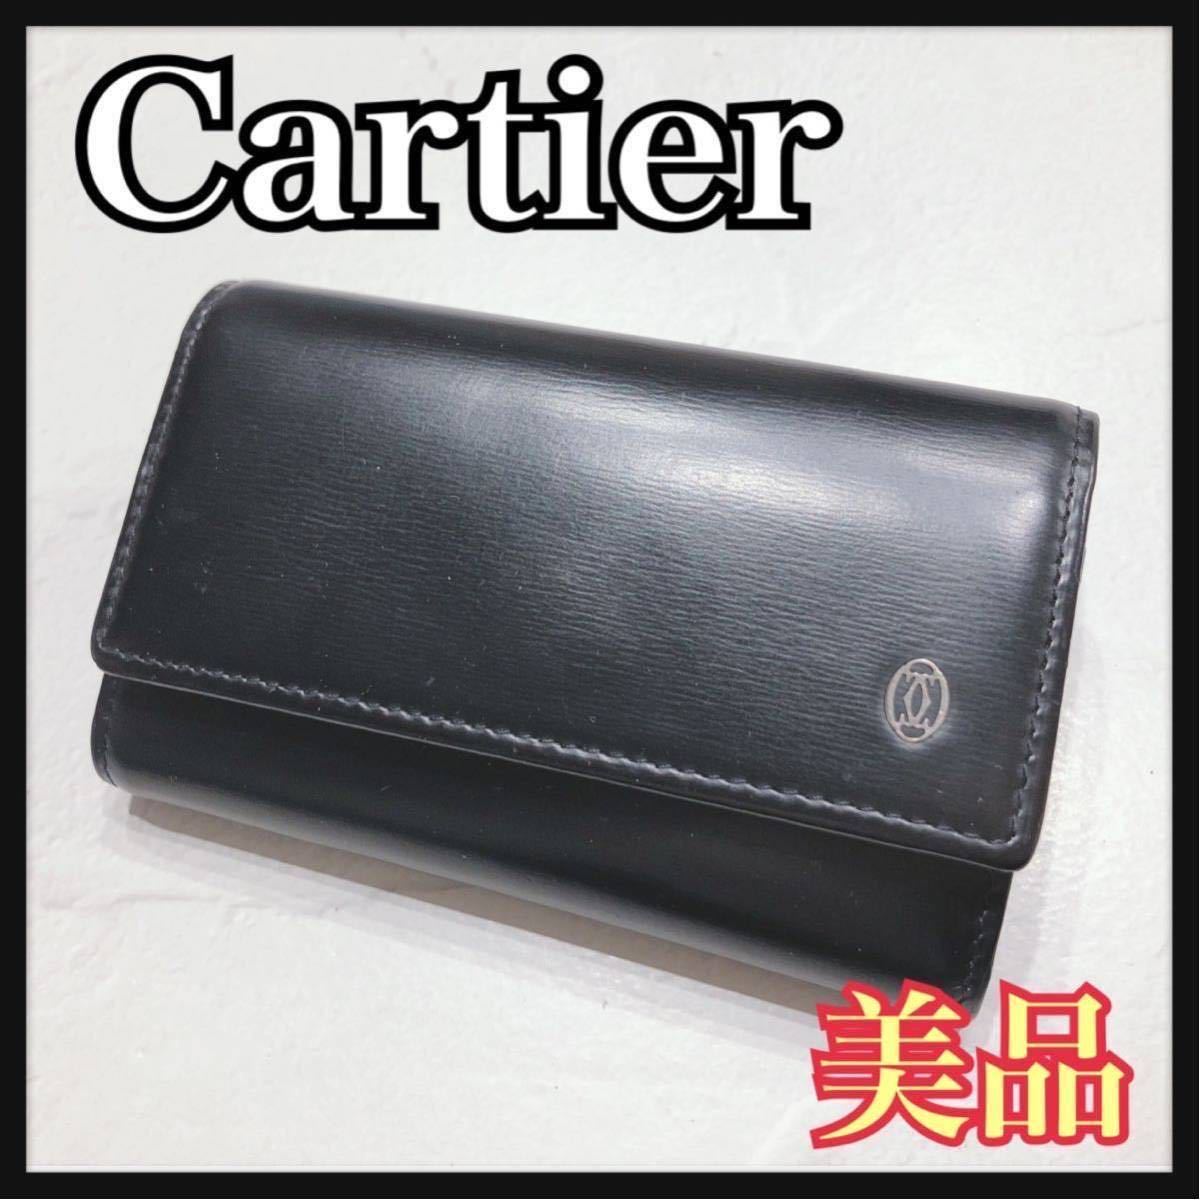 ☆美品☆ Cartier カルティエ キーケース 6連 ブラック 黒 レザー シンプル メンズ 男性 紳士 送料無料